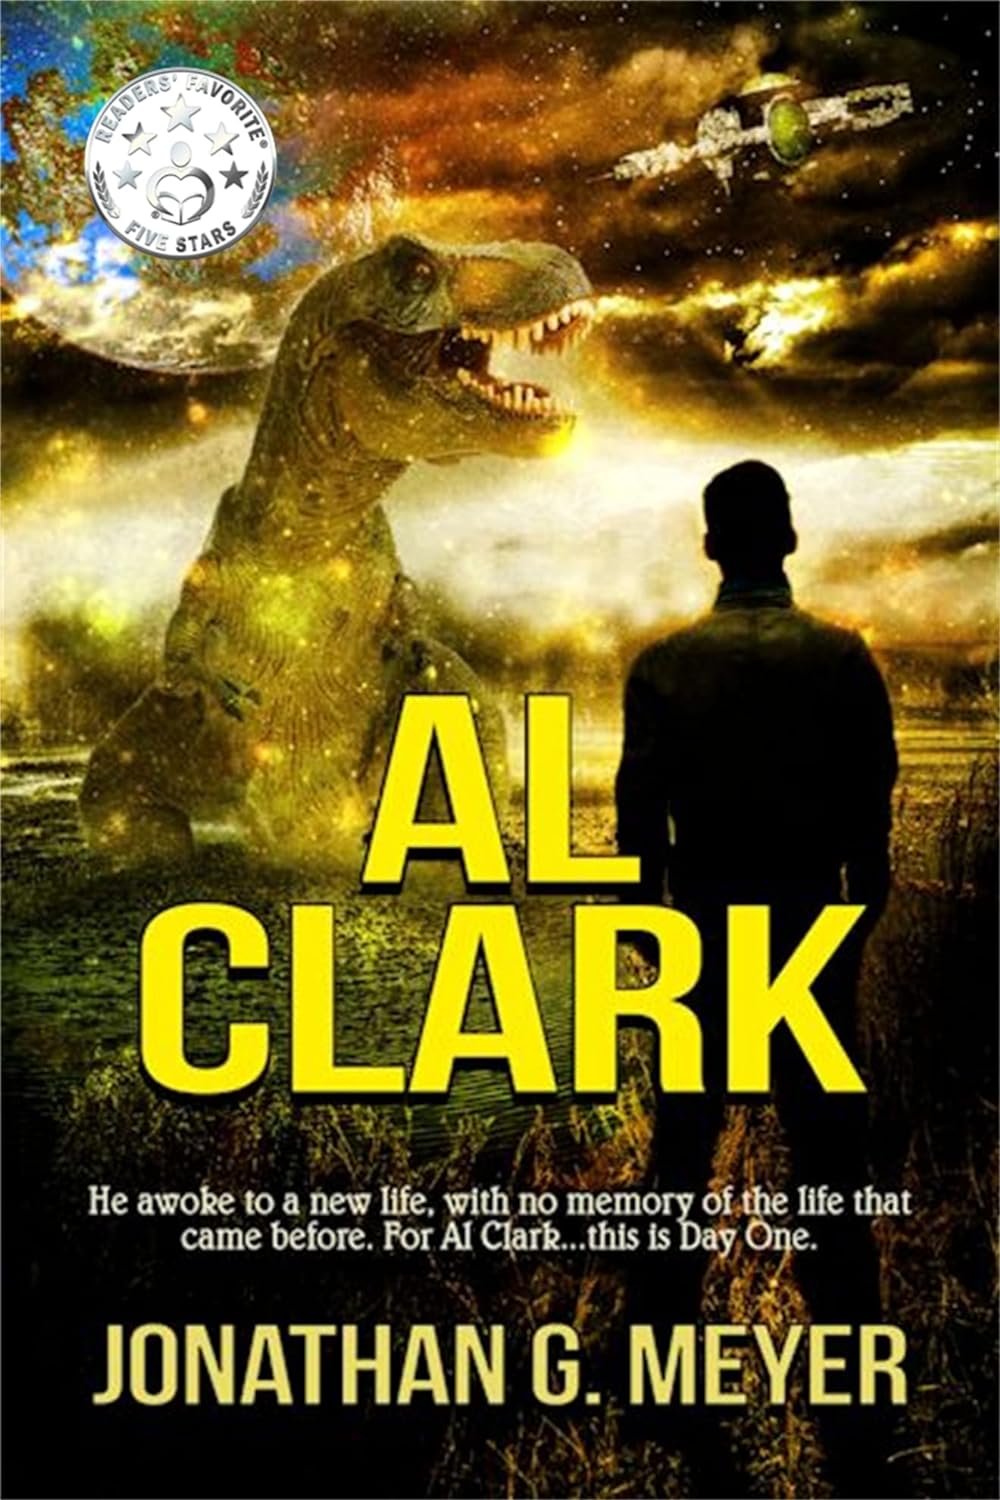 Al Clark (Book One) is free on Amazon Kindle